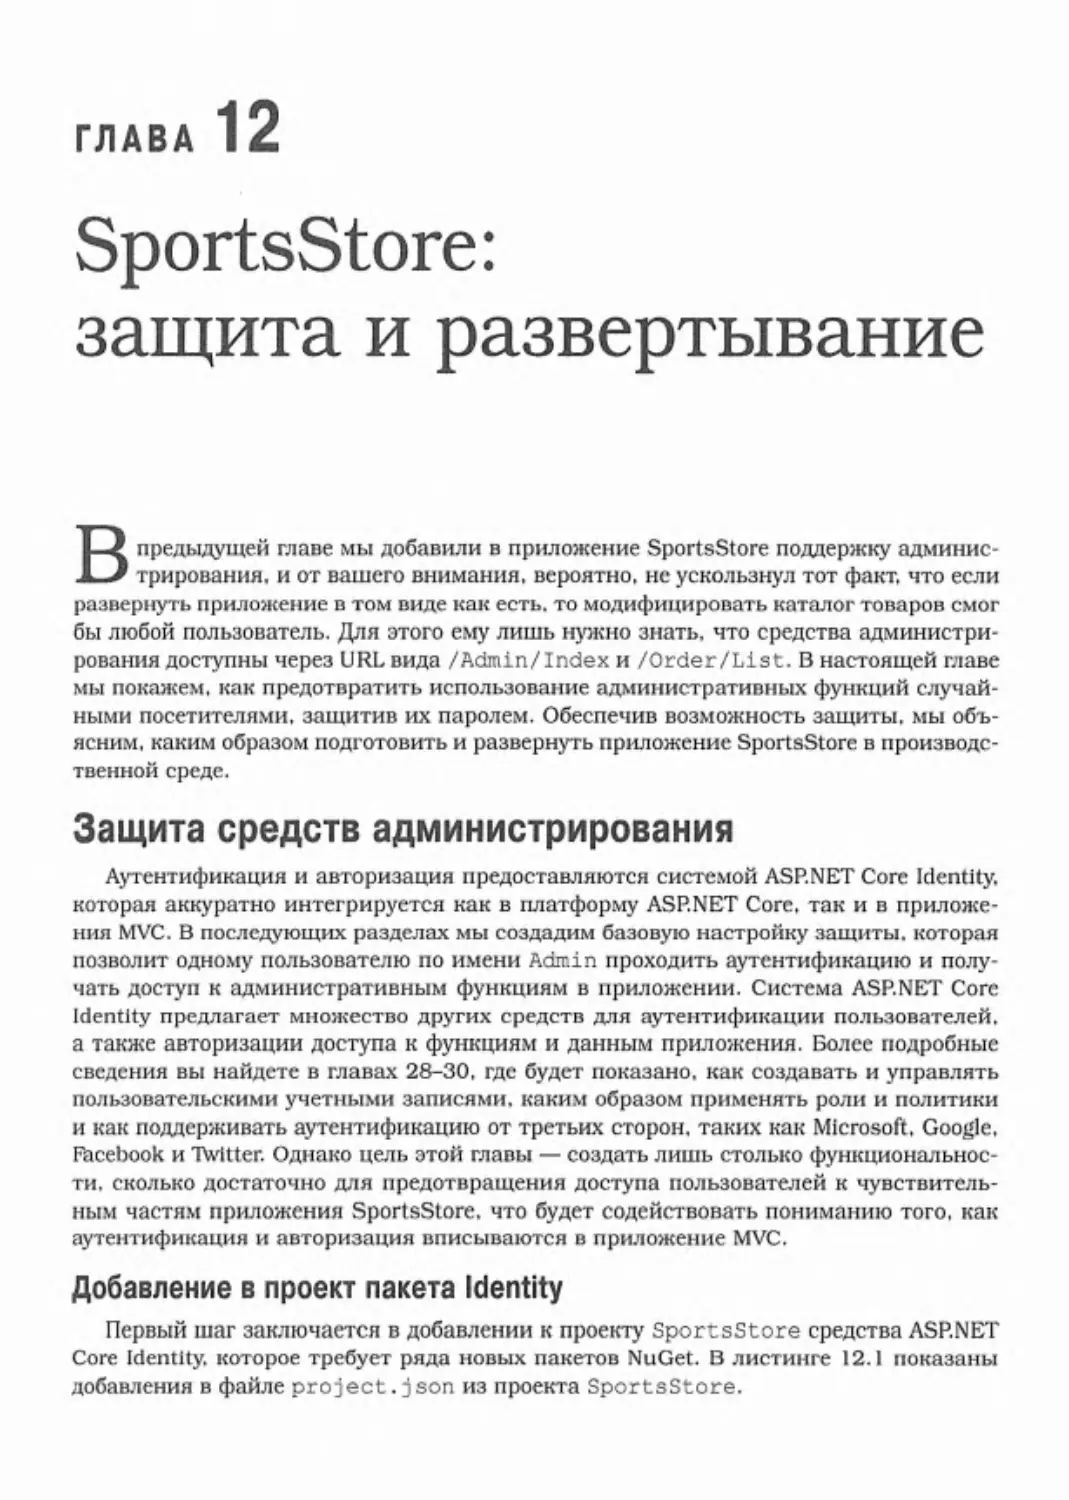 Глава 12. SportsStore: защита и развертывание